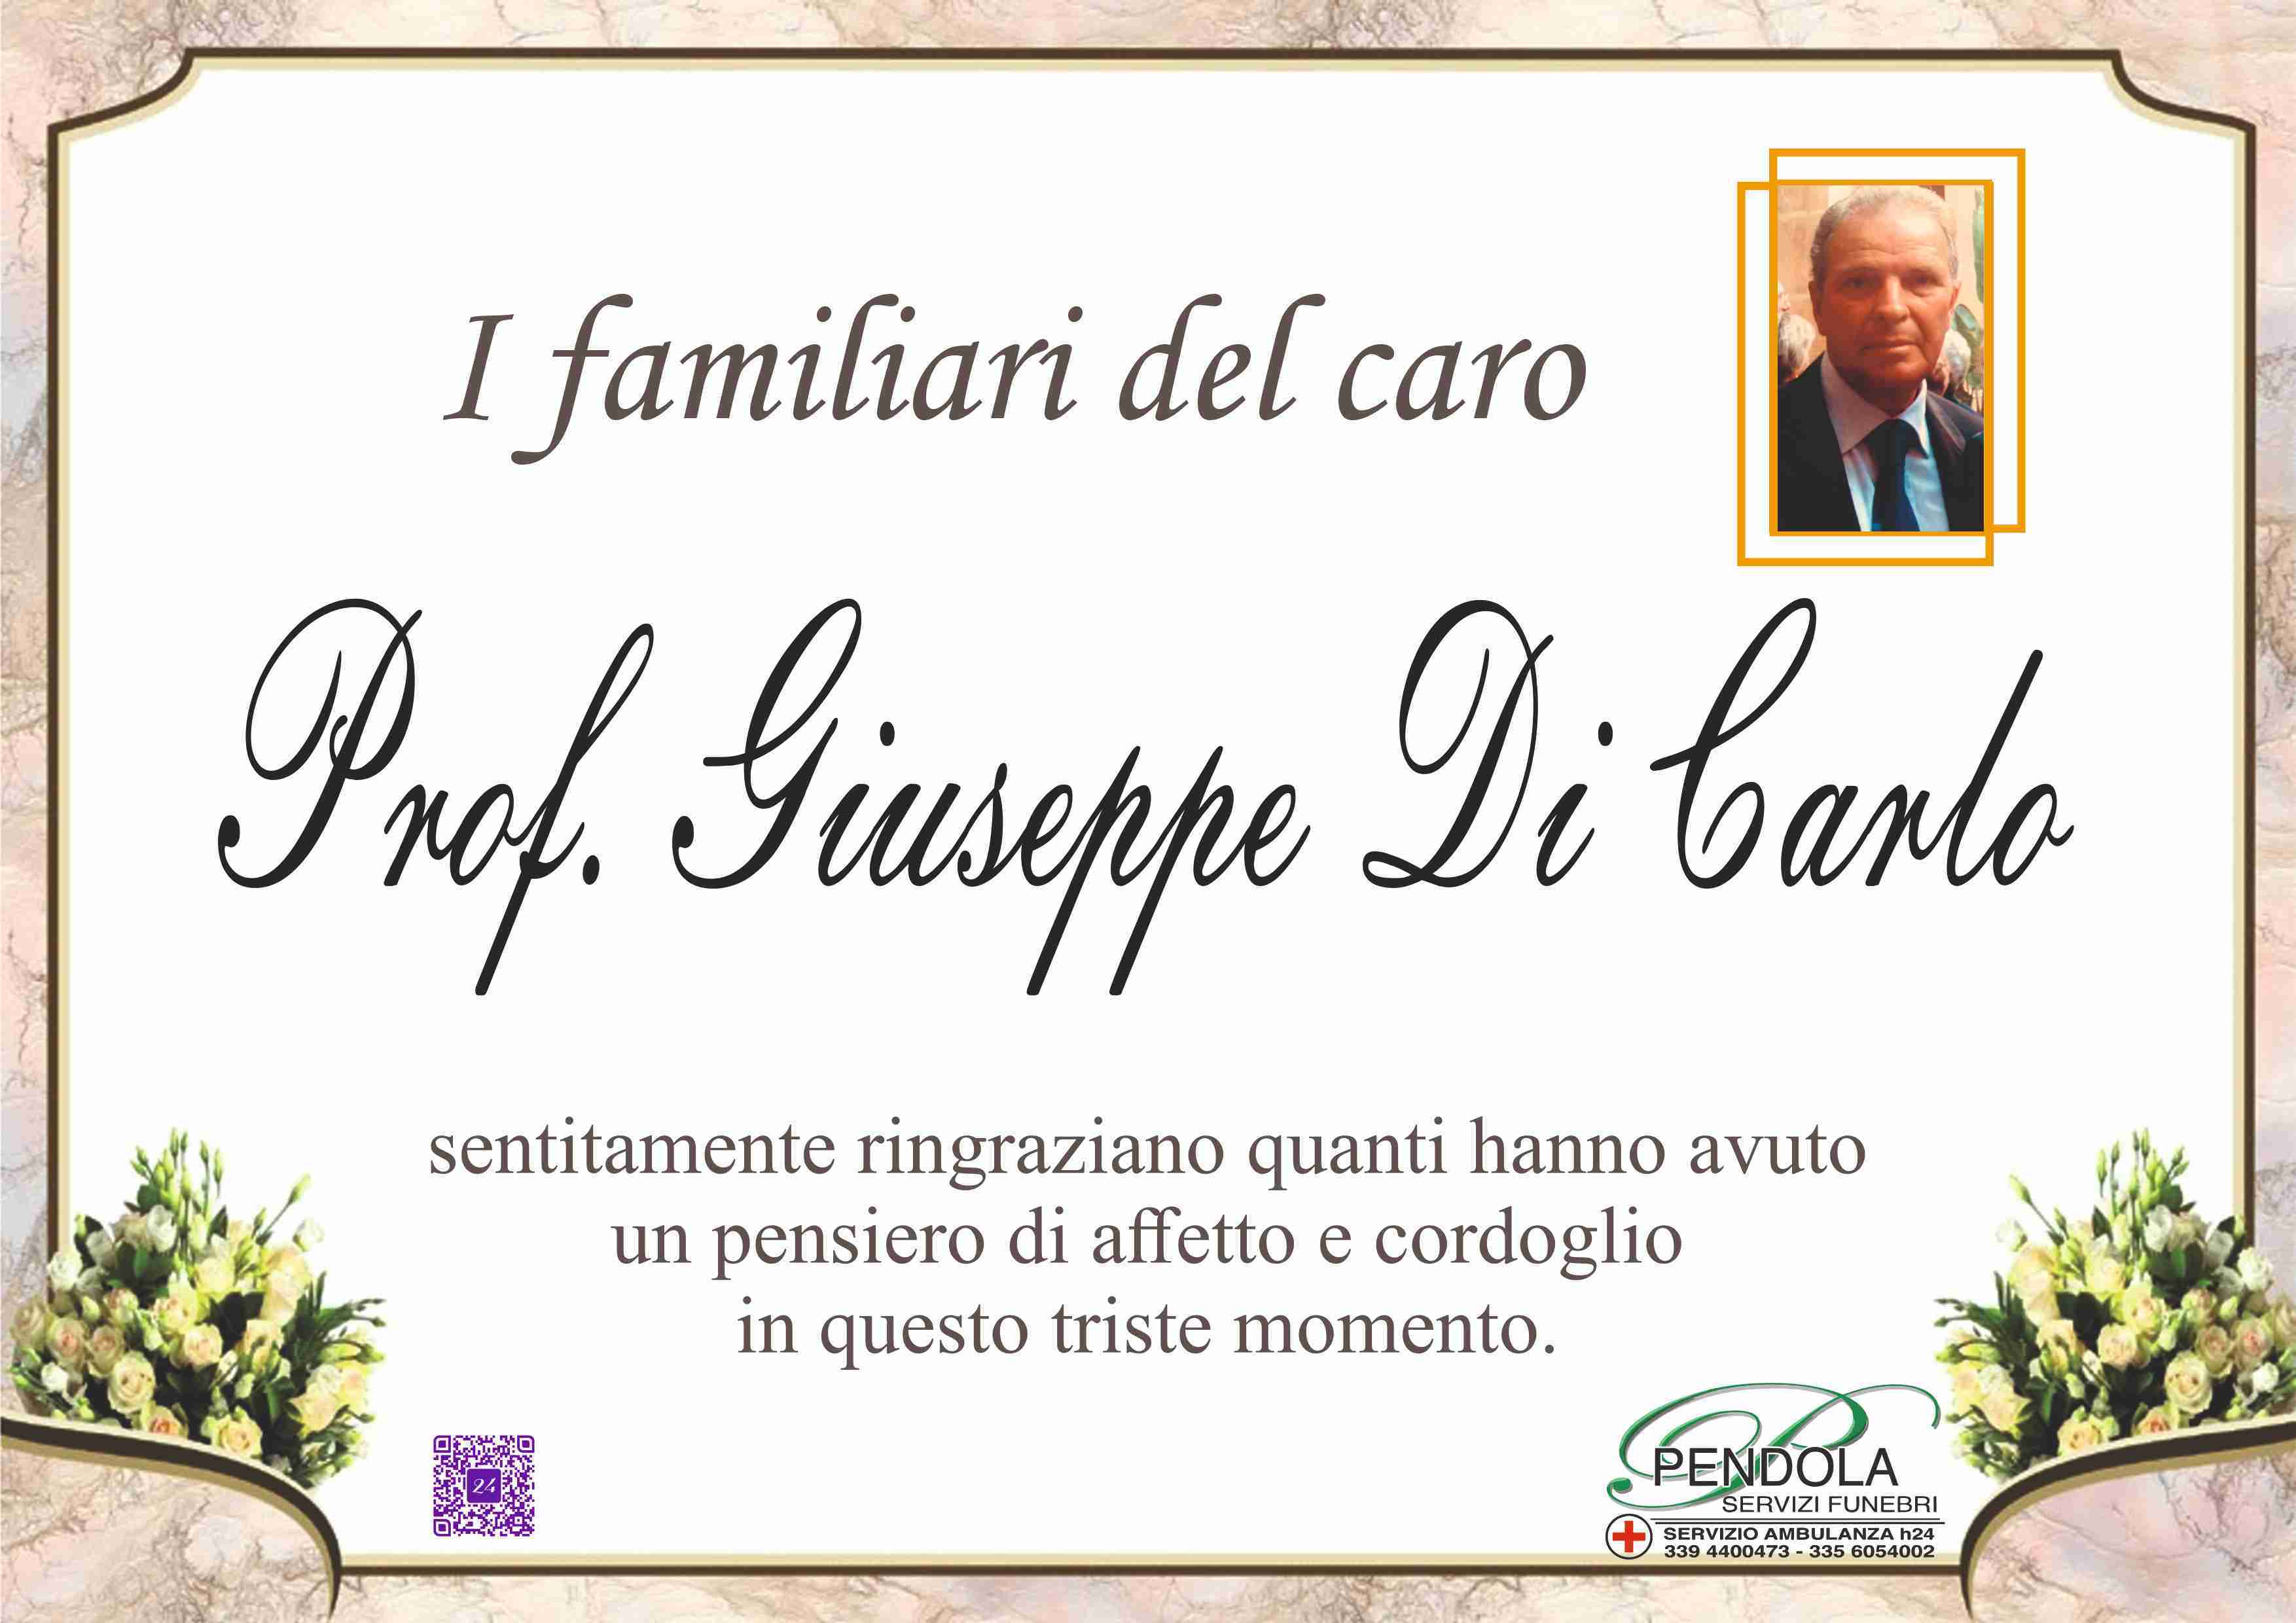 Prof. Giuseppe Di Carlo